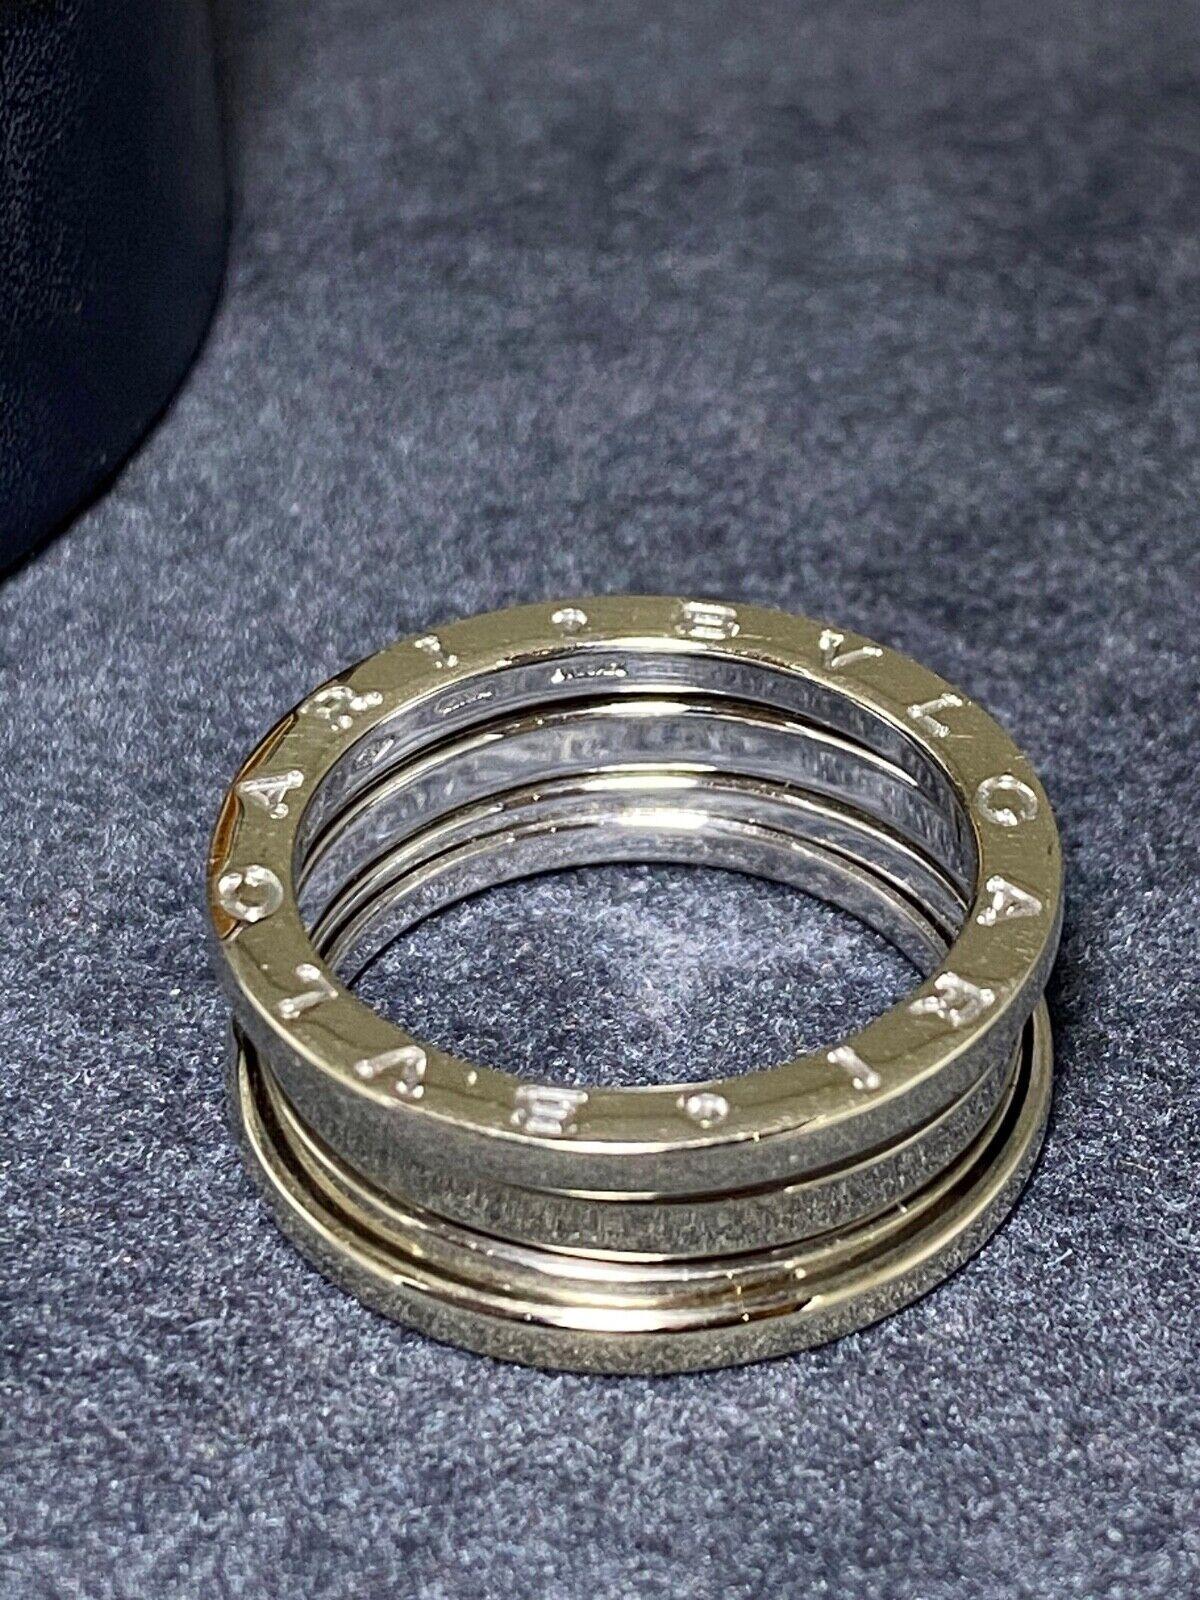 Moderne Bulgari B-Zero 1, bague/anneau en or blanc 18 carats 750, taille 58 (Q). Prix de vente 4200 $. en vente